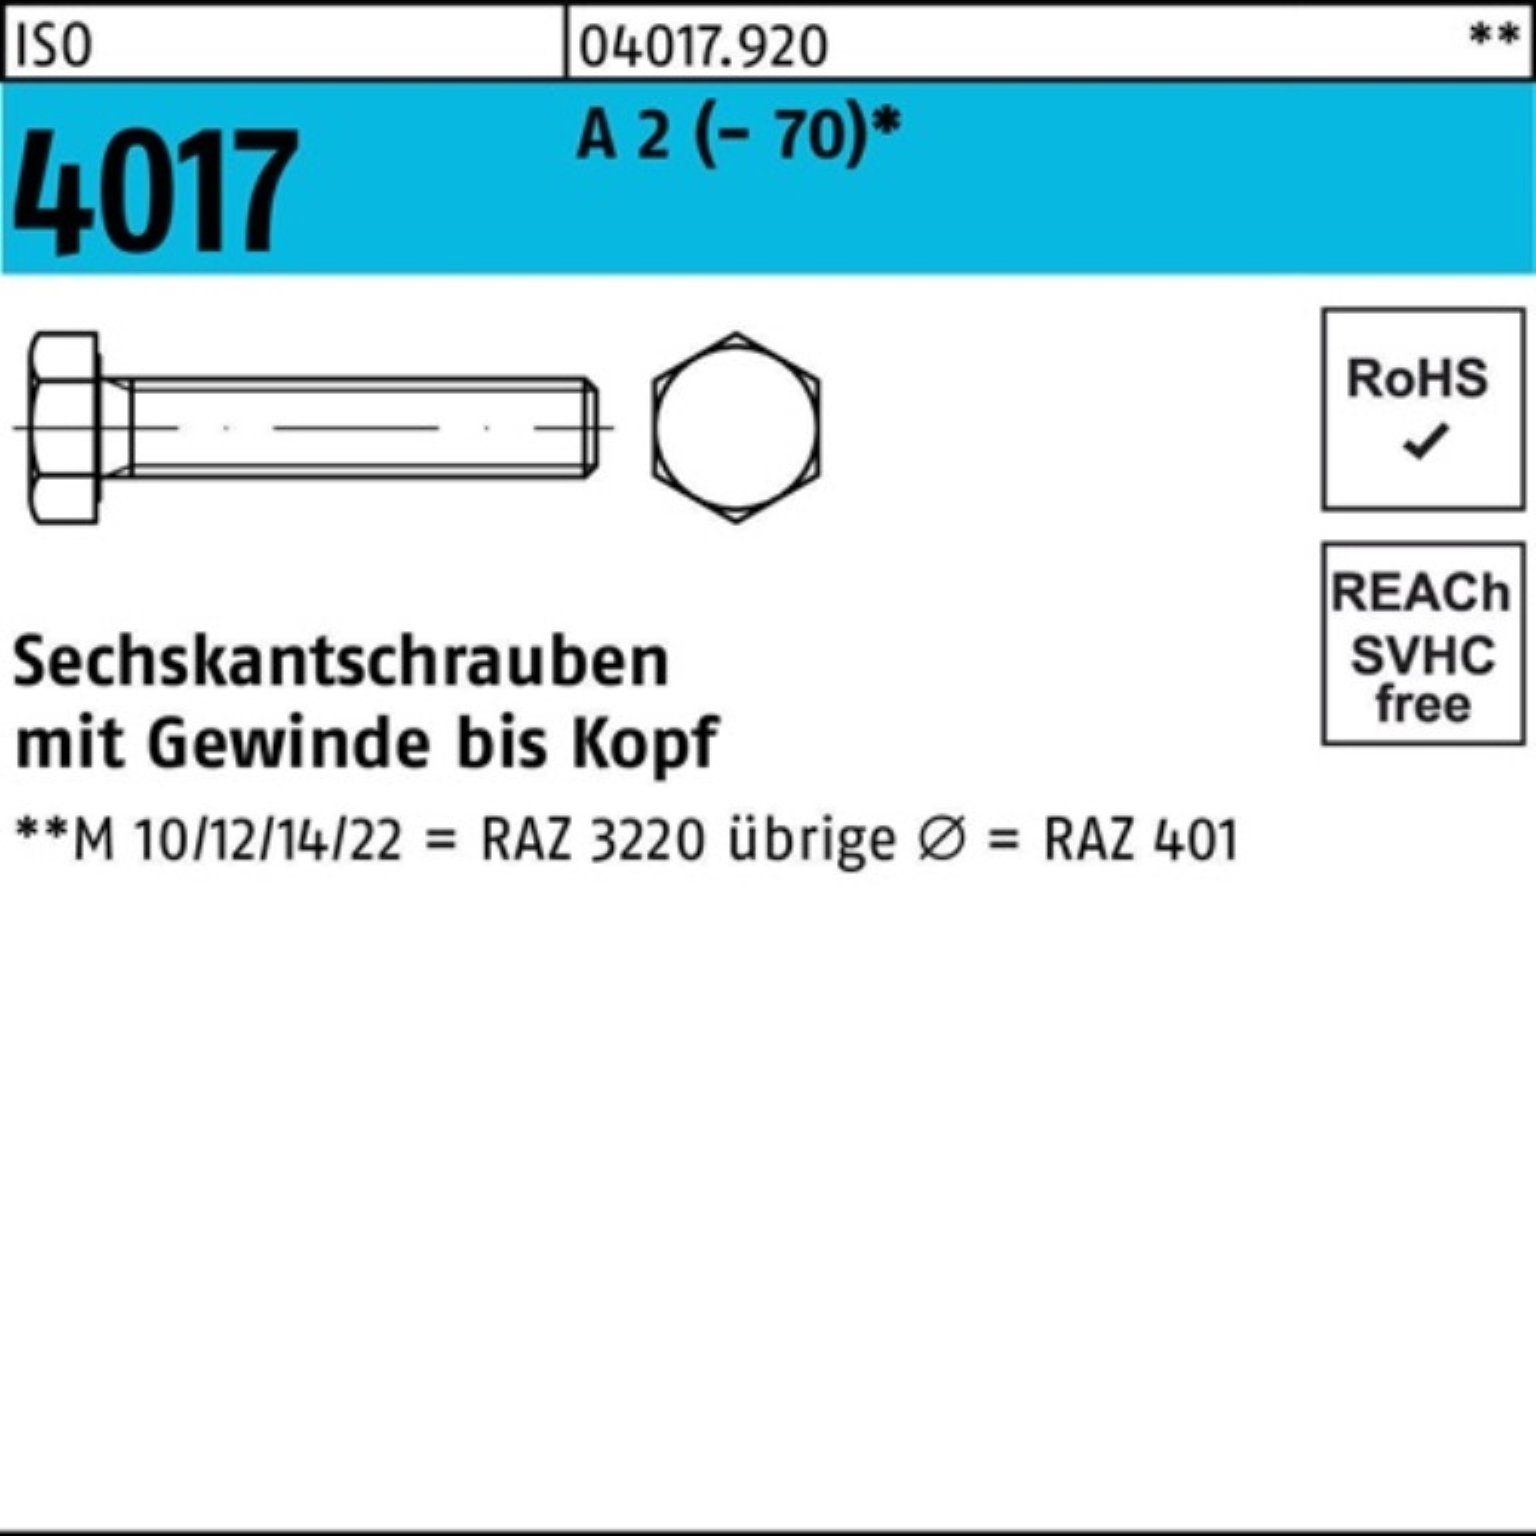 Bufab Sechskantschraube 100er Pack Sechskantschraube ISO 4017 VG M8x 100 A 2 (70) 50 Stück